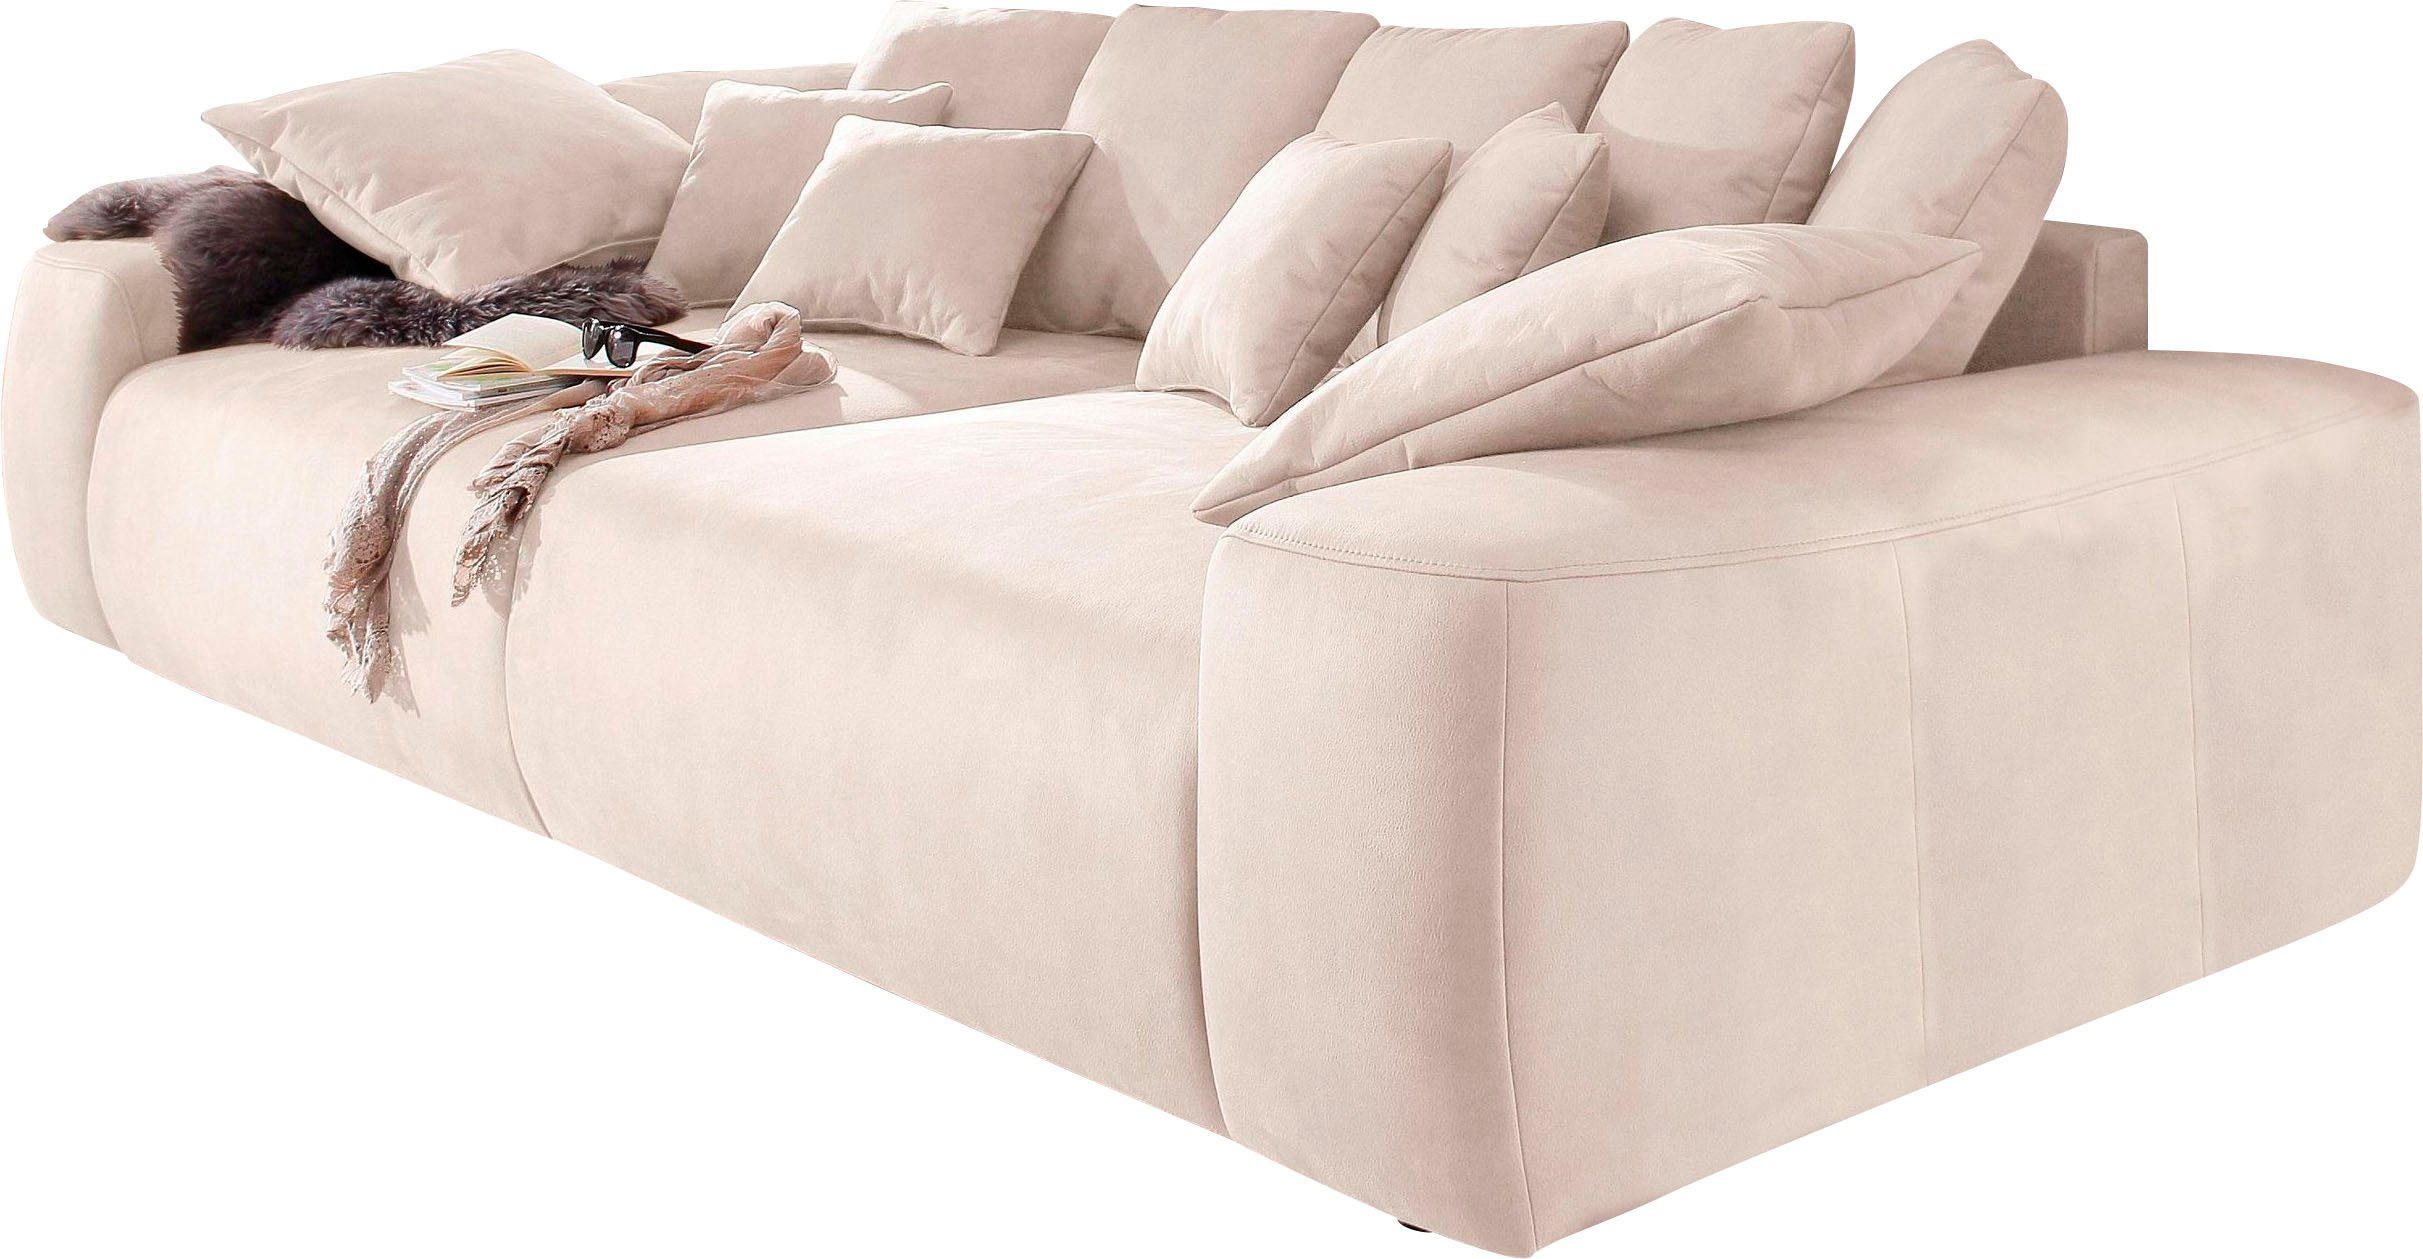 Home affaire Big-Sofa »Riveo«, Boxspringfederung, Breite 302 cm, Lounge Sofa  mit vielen losen Kissen, auch in Cord-Bezug online kaufen | OTTO